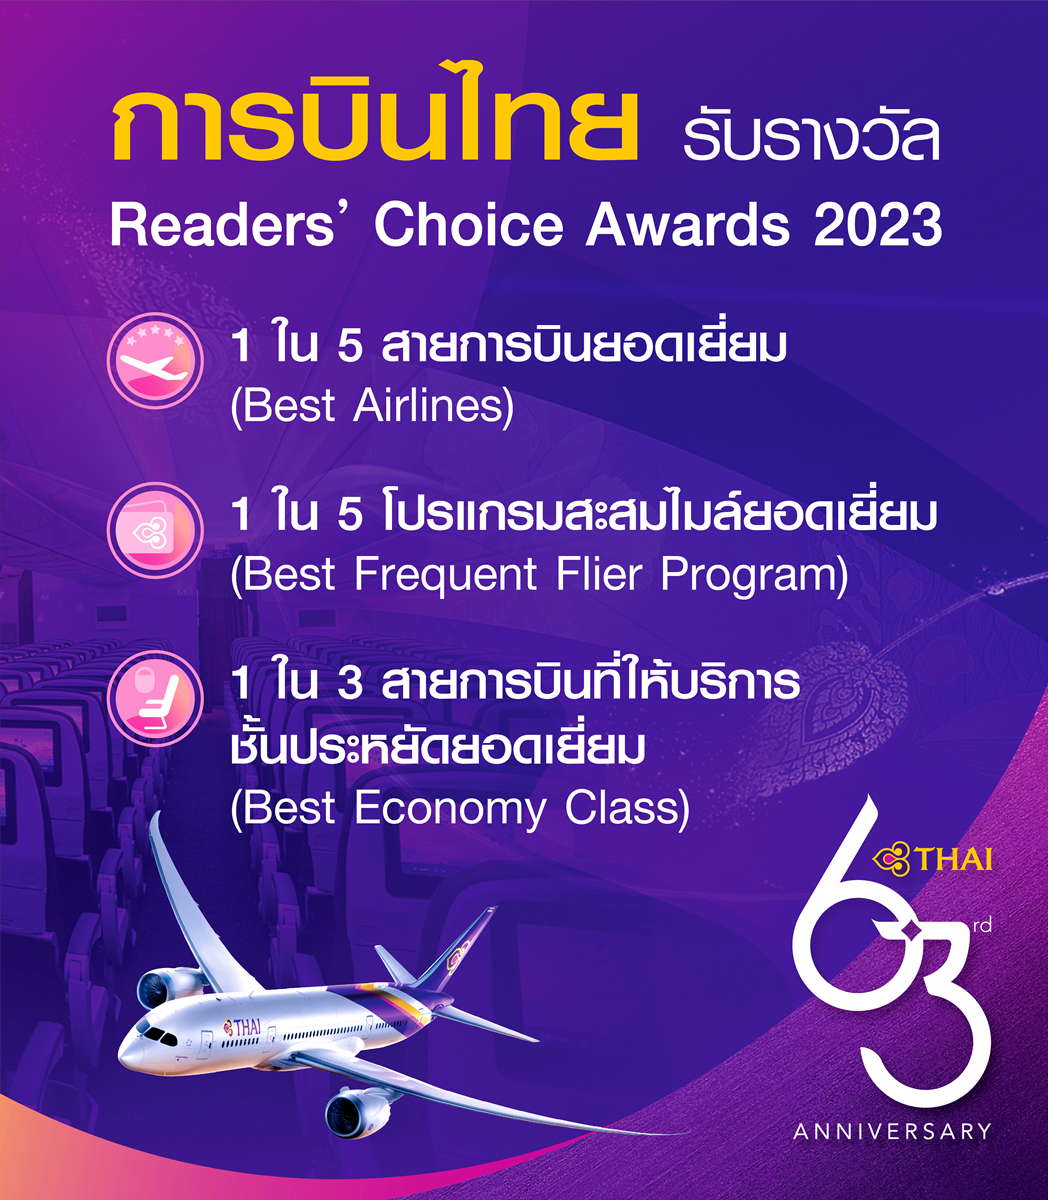 การบินไทยรับรางวัล 1 ใน 5 สายการบินยอดเยี่ยม โปรแกรมสะสมไมล์ยอดเยี่ยม และสายการบินที่ให้บริการชั้นประหยัดยอดเยี่ยม จาก DestinAsian Readers' Choice Awards